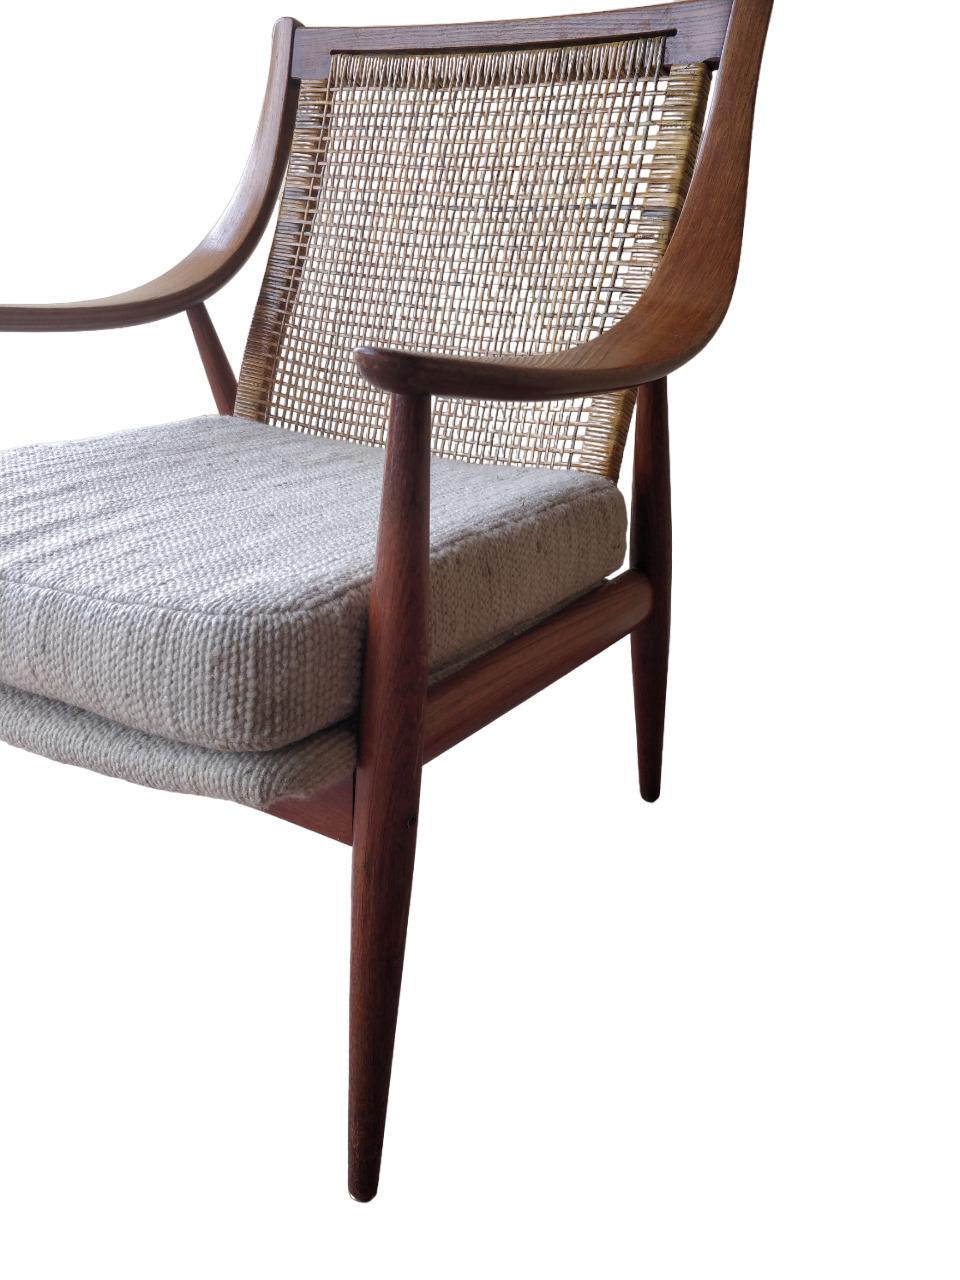 La chaise modèle 147, conçue par Peter Hvidt & Orla Molgaard Nielsen pour France et fils, est l'une des chaises les plus gracieuses de la modernité danoise. La combinaison des lignes fluides et très expressives de la structure avec le dossier en